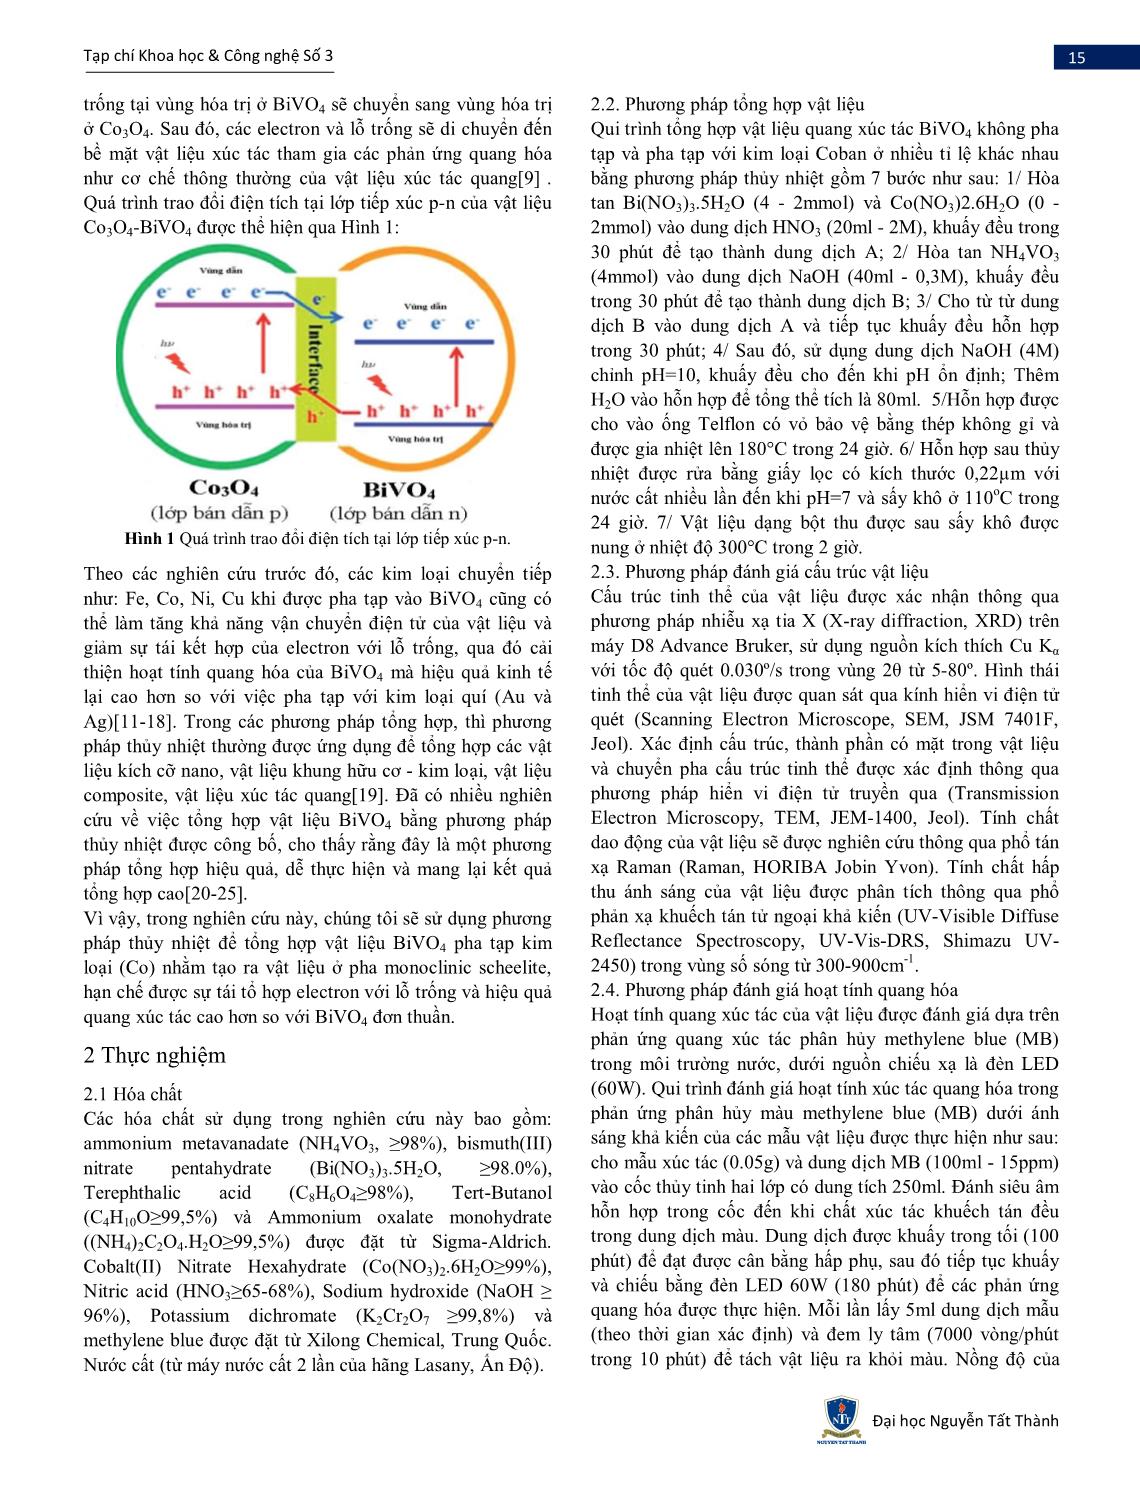 Nghiên cứu tổng hợp Co-BiVO4 bằng phương pháp thủy nhiệt và đánh giá khả năng quang xúc tác sử dụng ánh sáng nhìn thấy trang 2